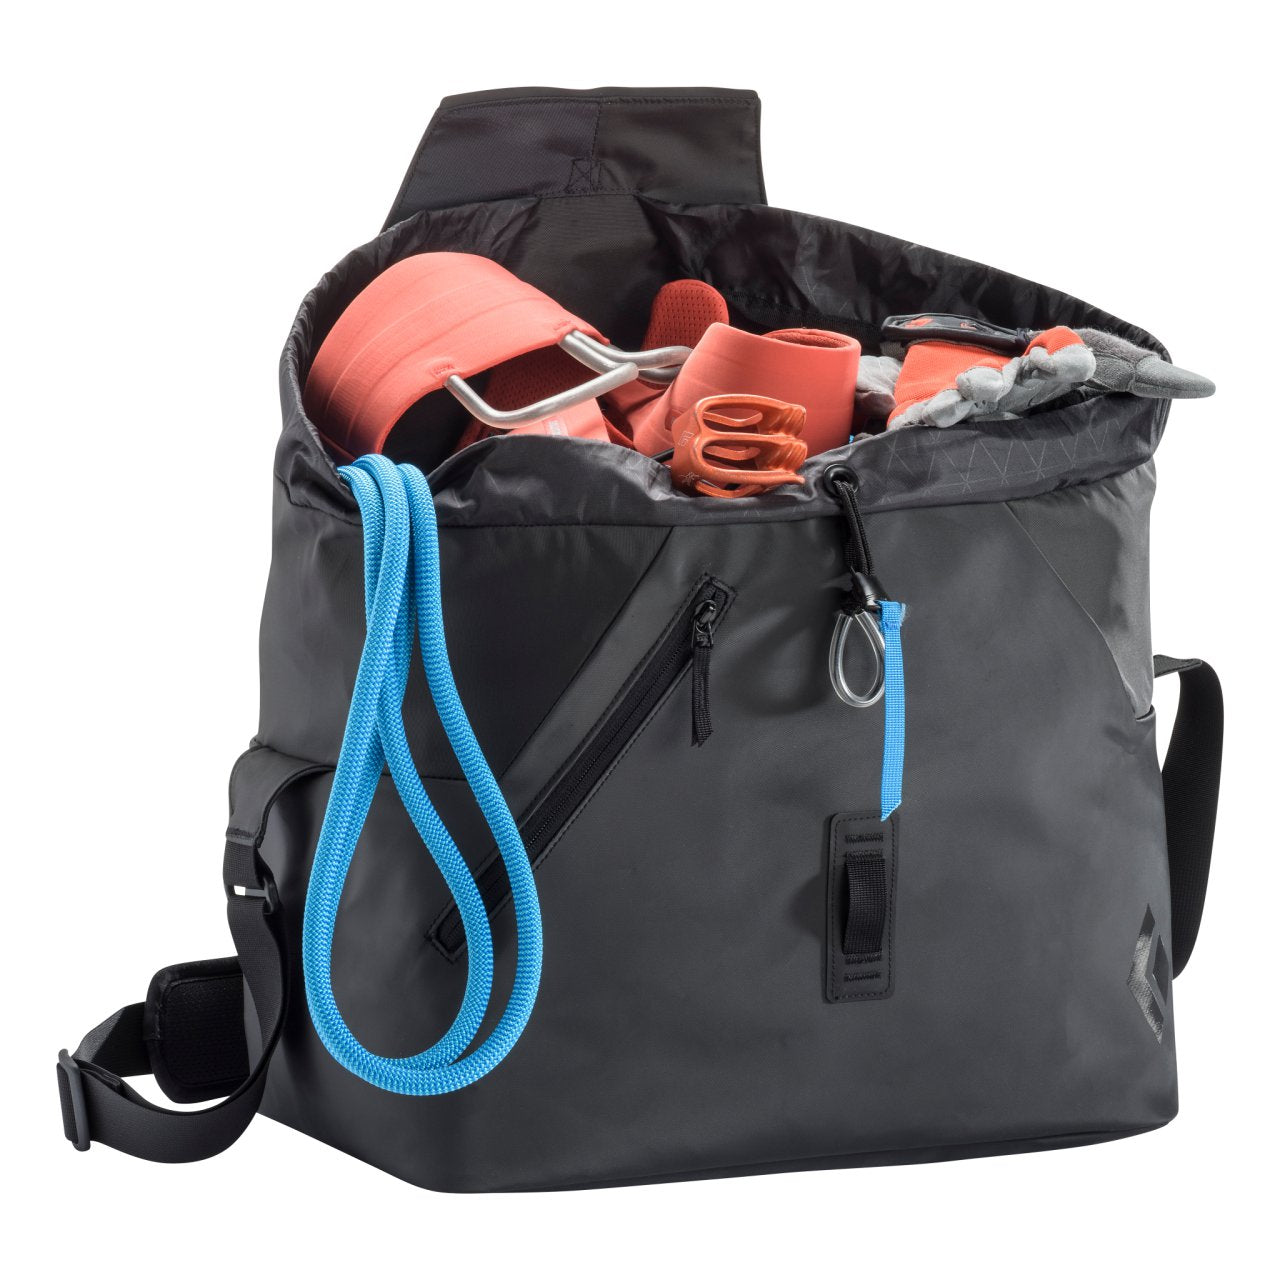 Gym (35L), gear bag